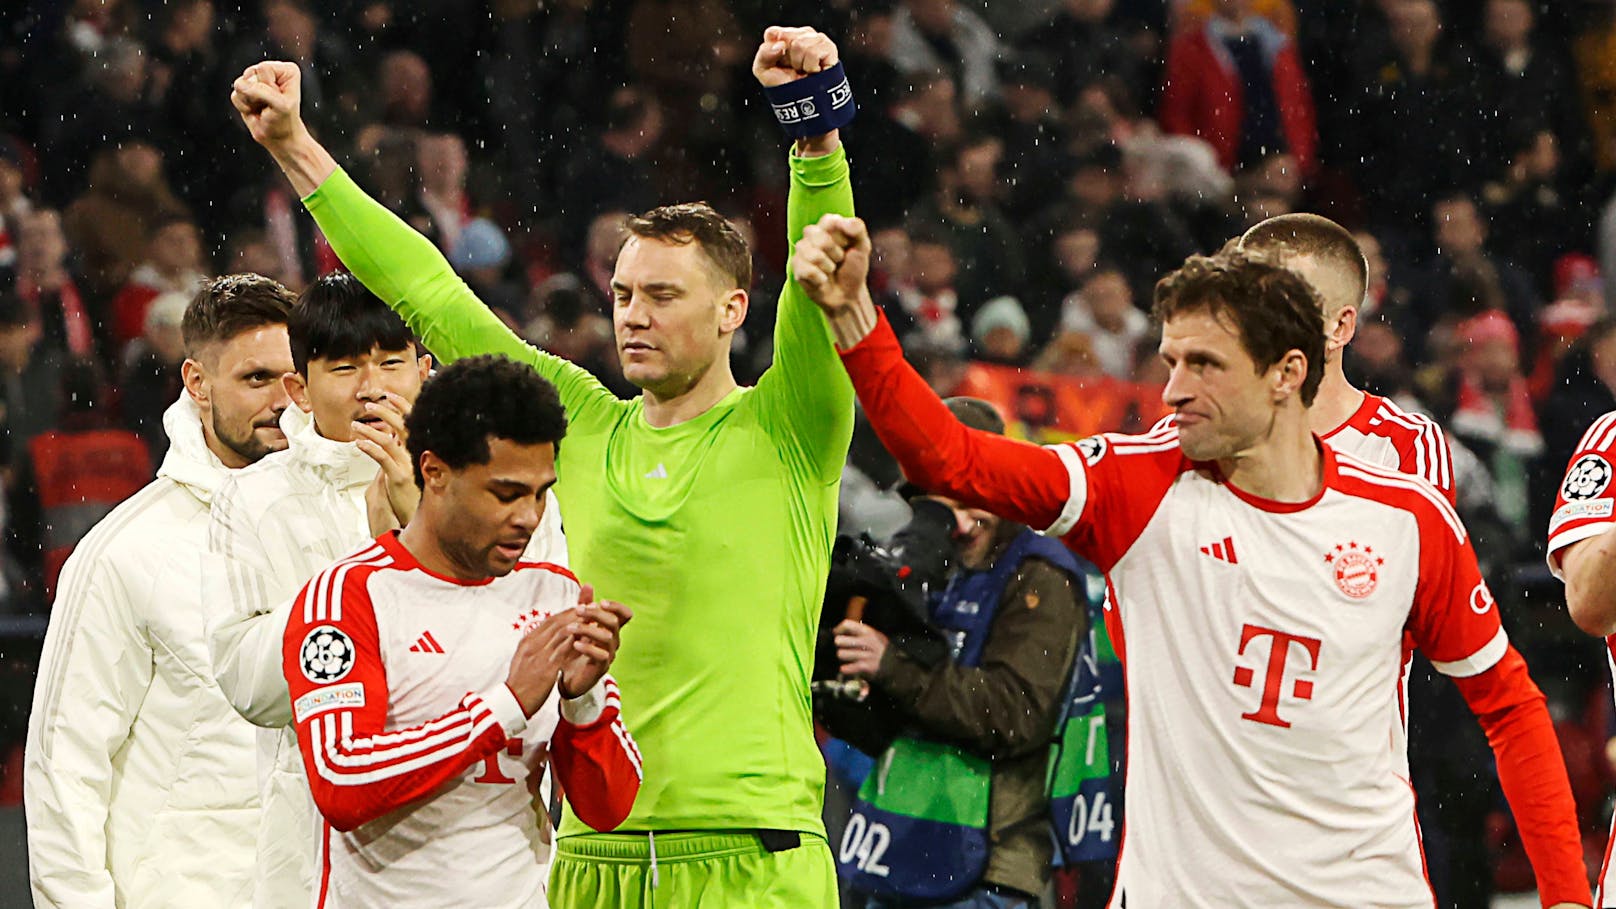 Bayern-Star nach Sieg: "Das kann die Saison verändern"